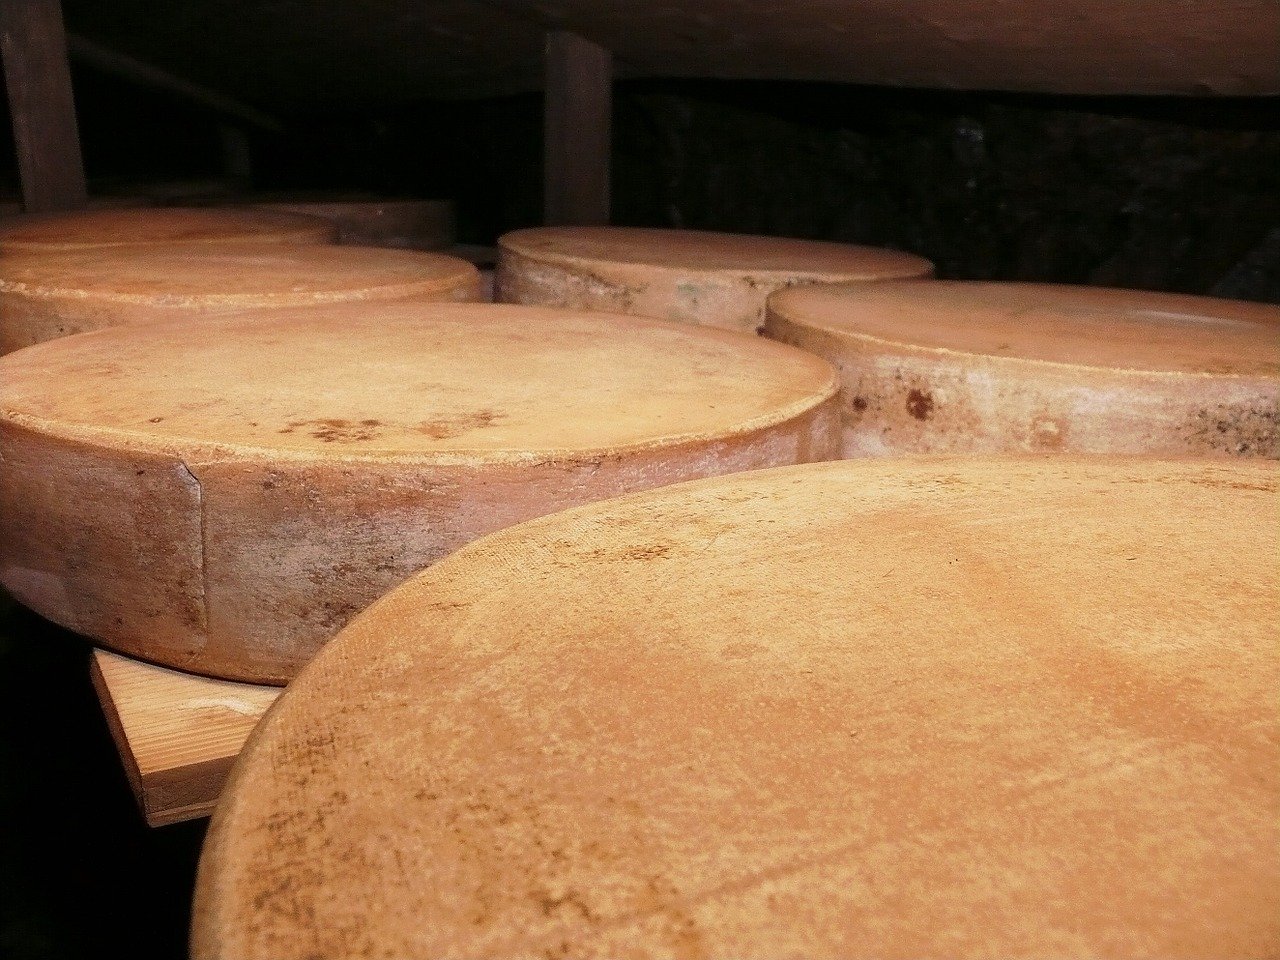 Käse verkauft sich im Ausland gut, was den Export attraktiv macht. (Bild moritz320 / Pixabay)